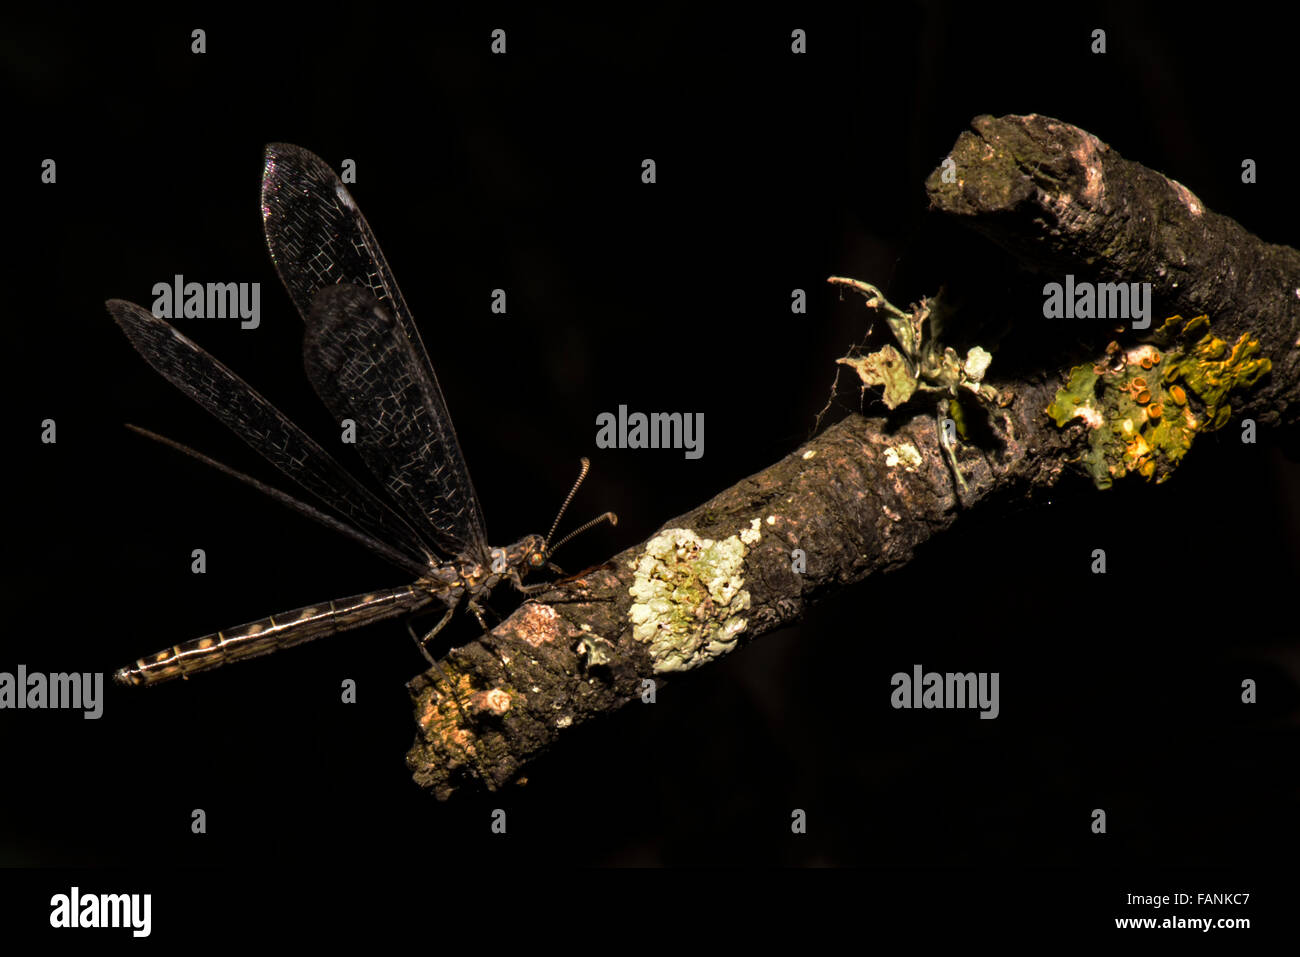 Antlion adult with wings open on tree branch Platamona, Sassari, Sardinia, Italy Stock Photo